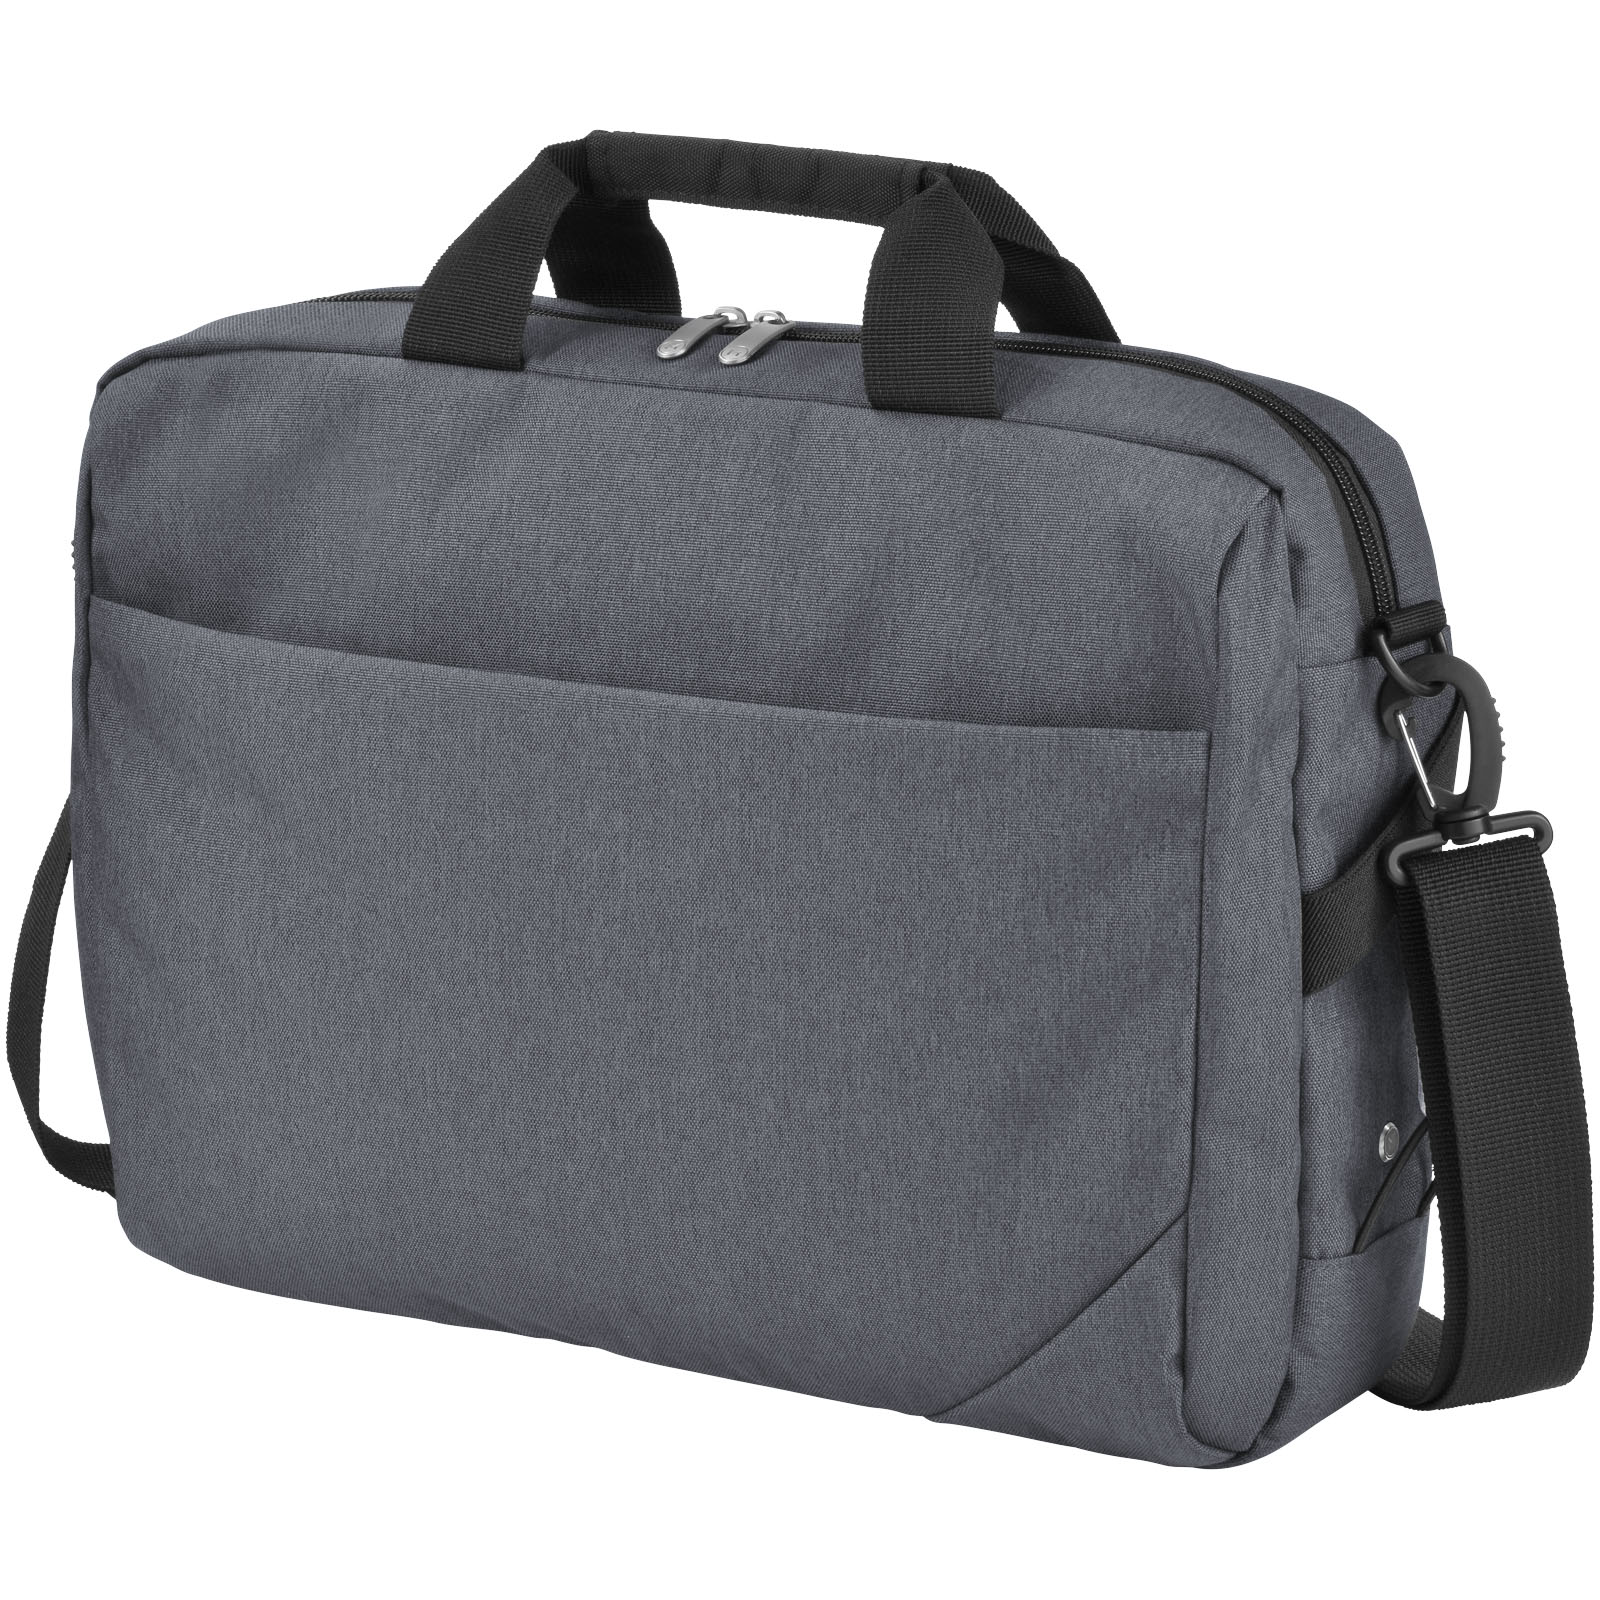 Elegant Tech Bag - Flaxley - Deal